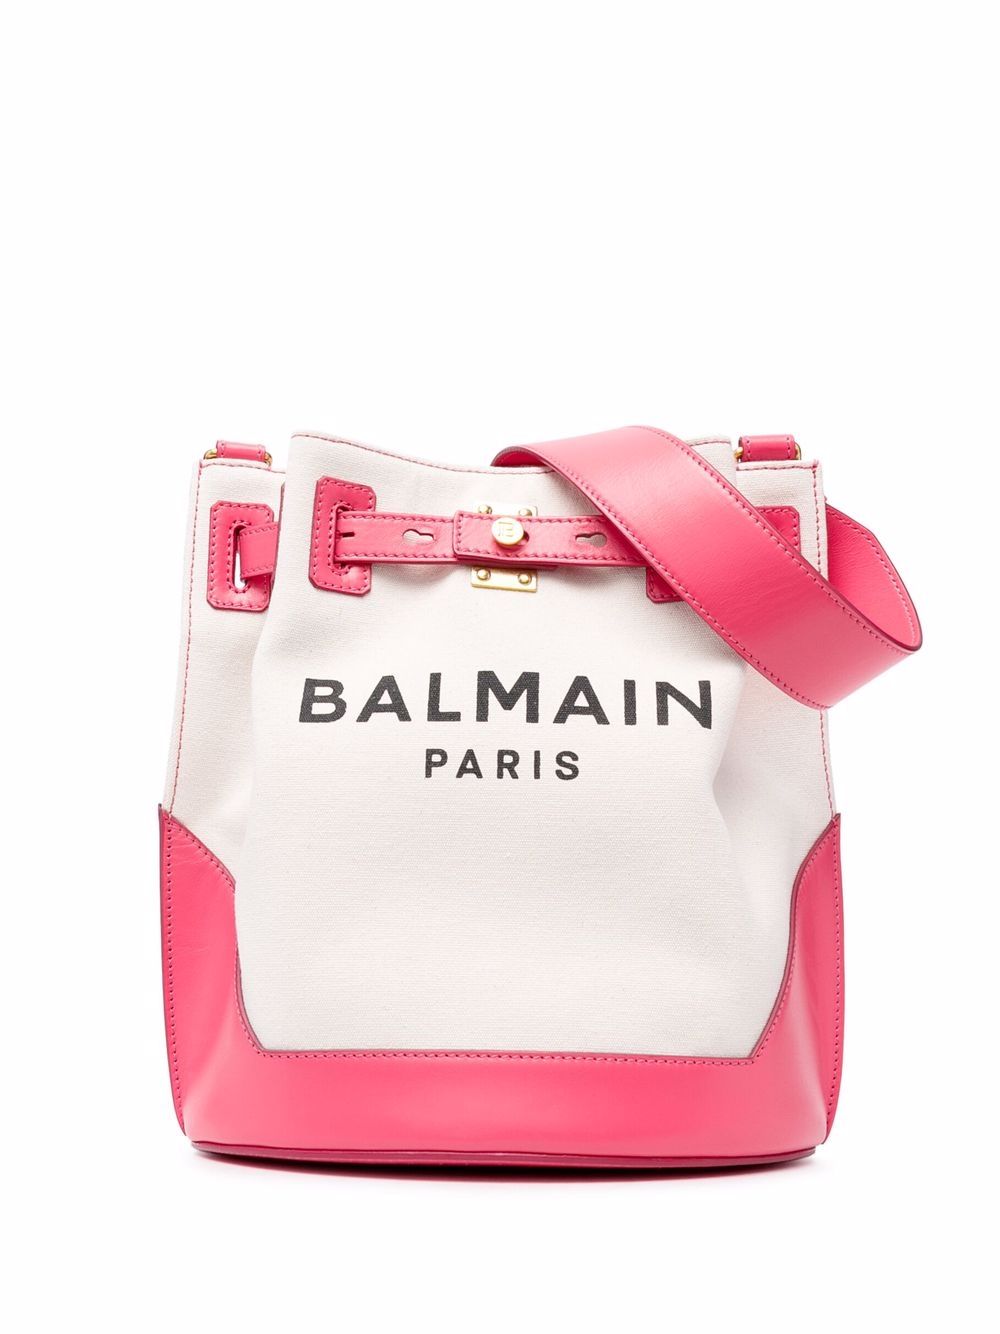 фото Balmain сумка-ведро с контрастной отделкой и логотипом